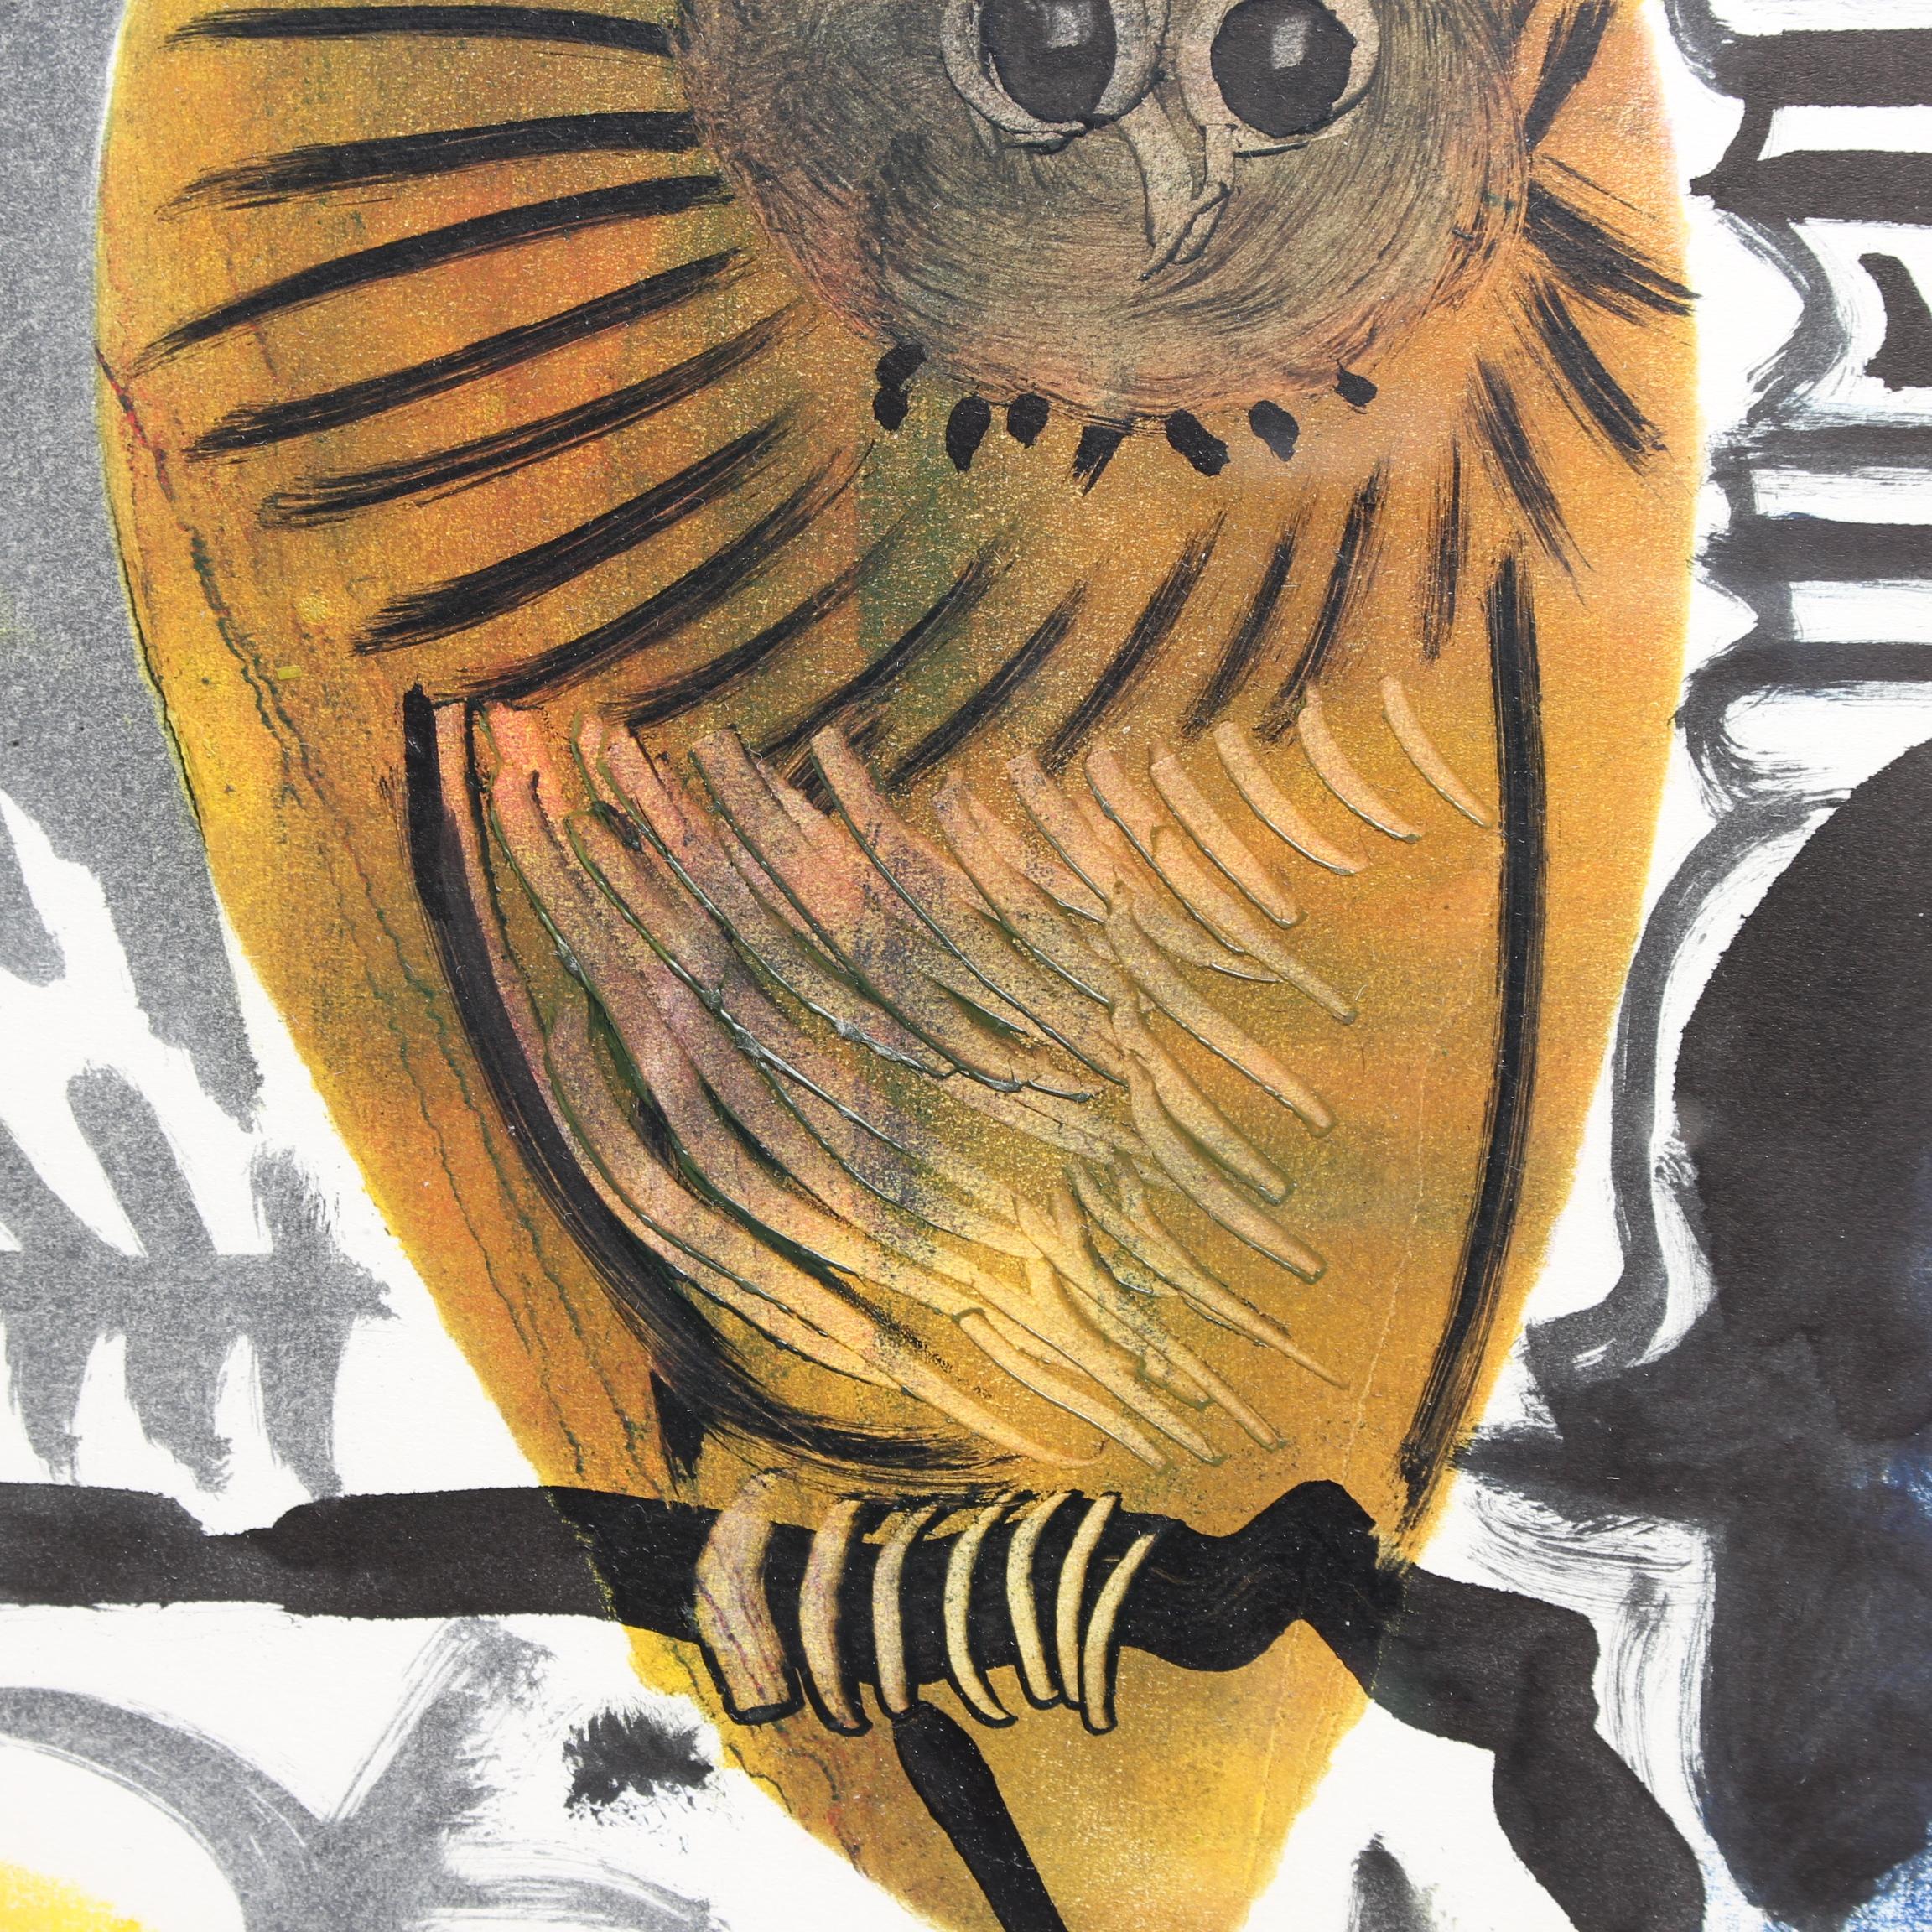 'The Owl' (La Chouette) by Raymond Debiève (1968) 3